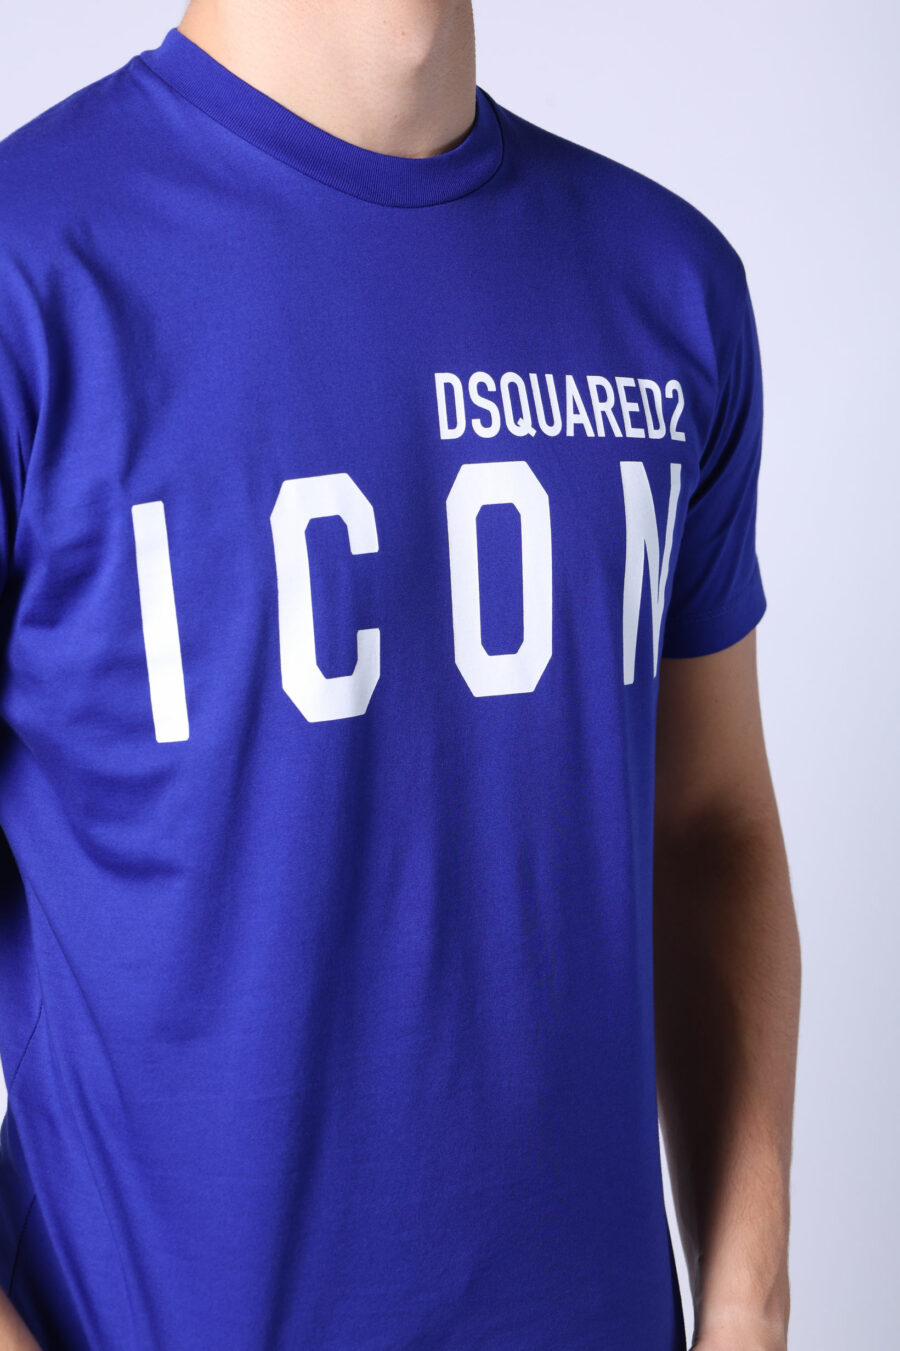 T-shirt bleu électrique avec maxilogo "icon" blanc - Untitled Catalog 05400